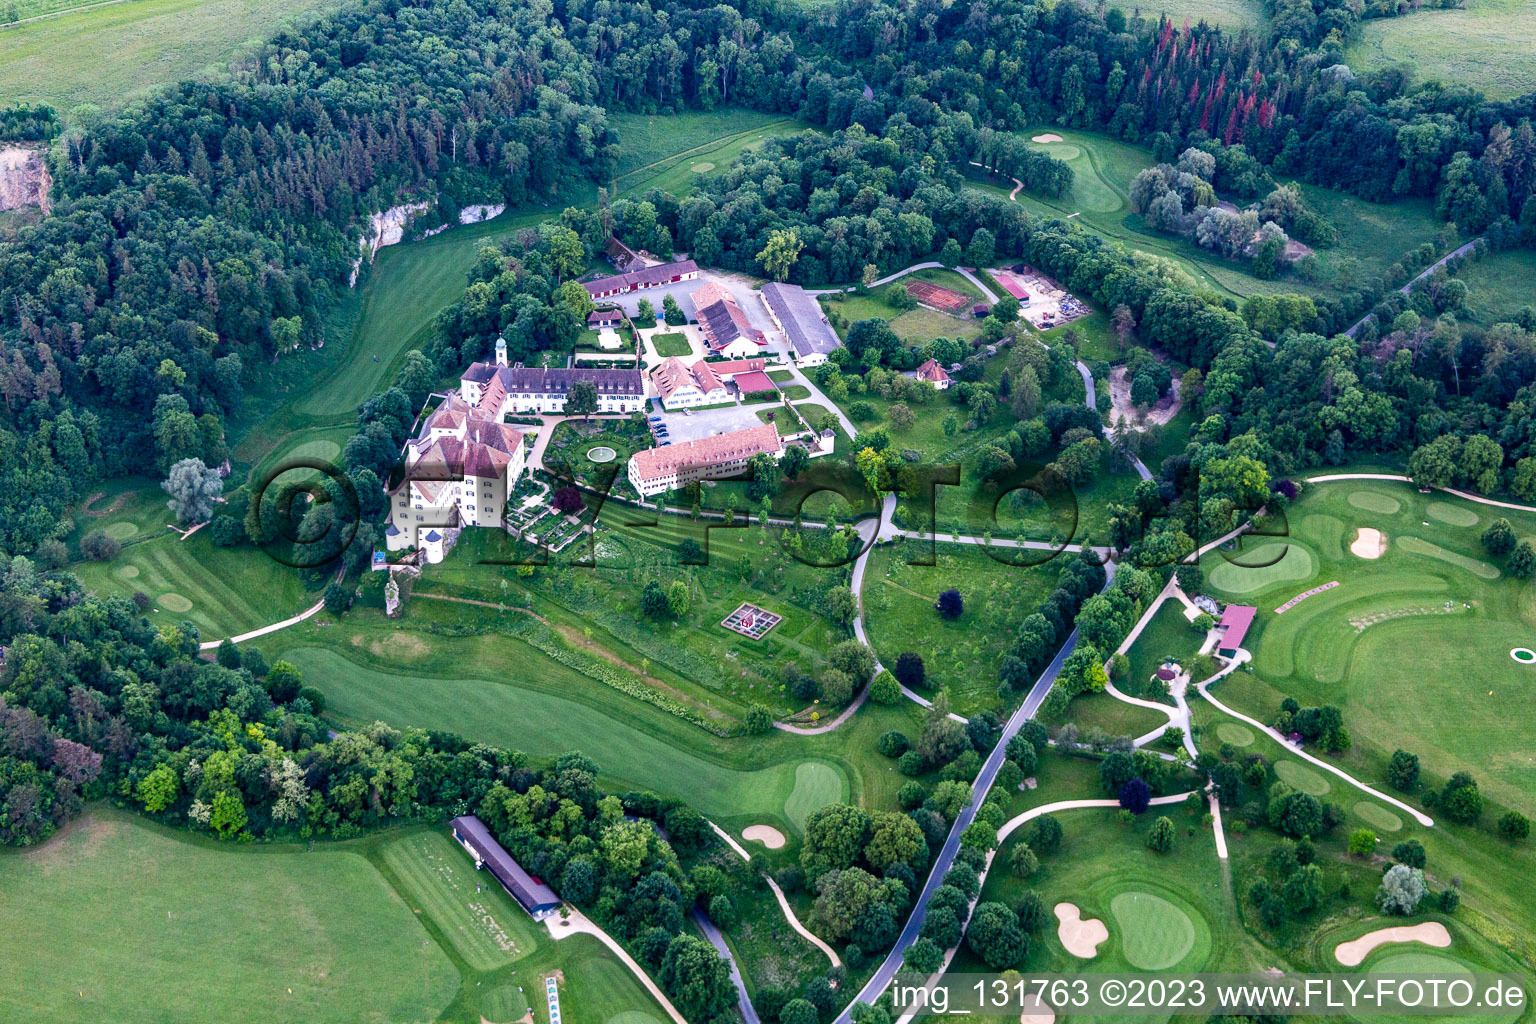 Vue oblique de Le Country Club Schloss Langenstein - Le parcours de golf au bord du lac de Constance à Orsingen-Nenzingen dans le département Bade-Wurtemberg, Allemagne